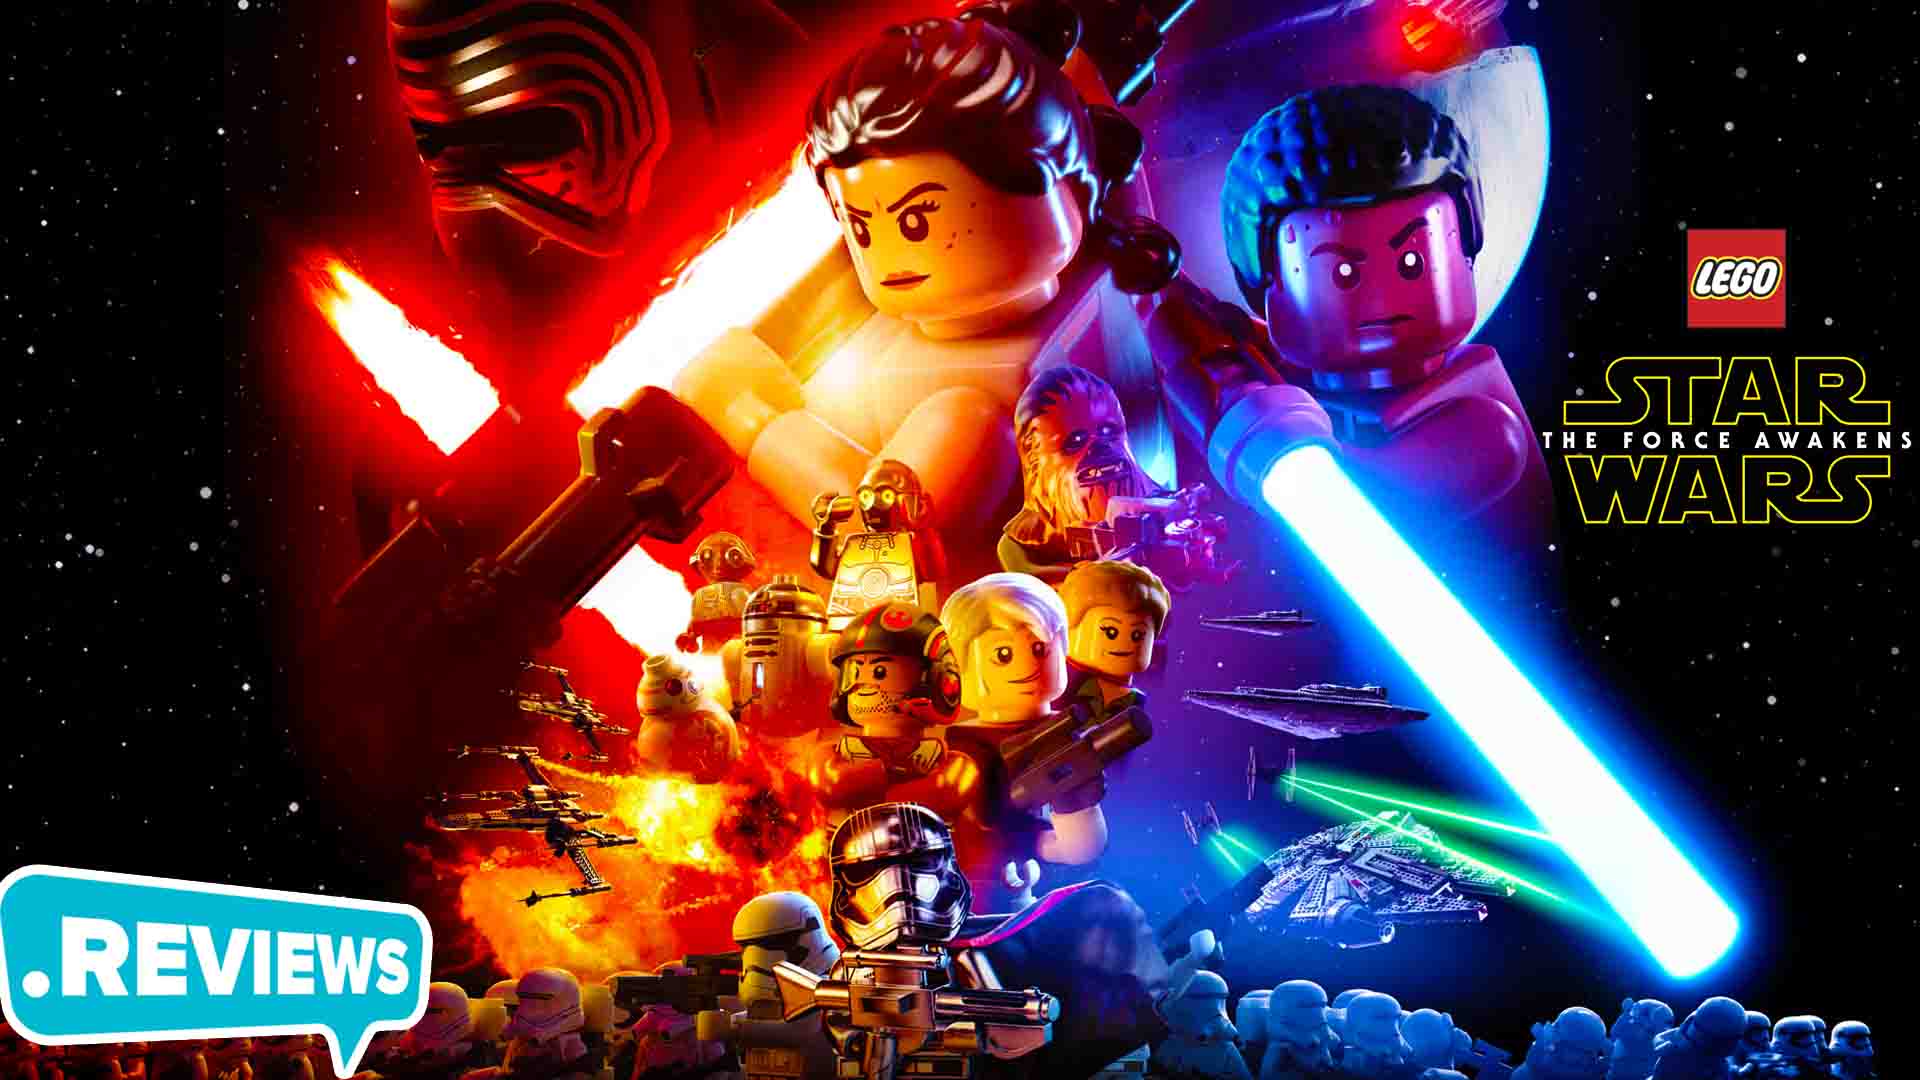 Xem các mô hình LEGO STAR WARS để thấy sự chi tiết và khéo léo của các tay chơi đam mê LEGO! Hãy dành thời gian để đắm chìm trong thế giới vô tận của Star Wars và LEGO.